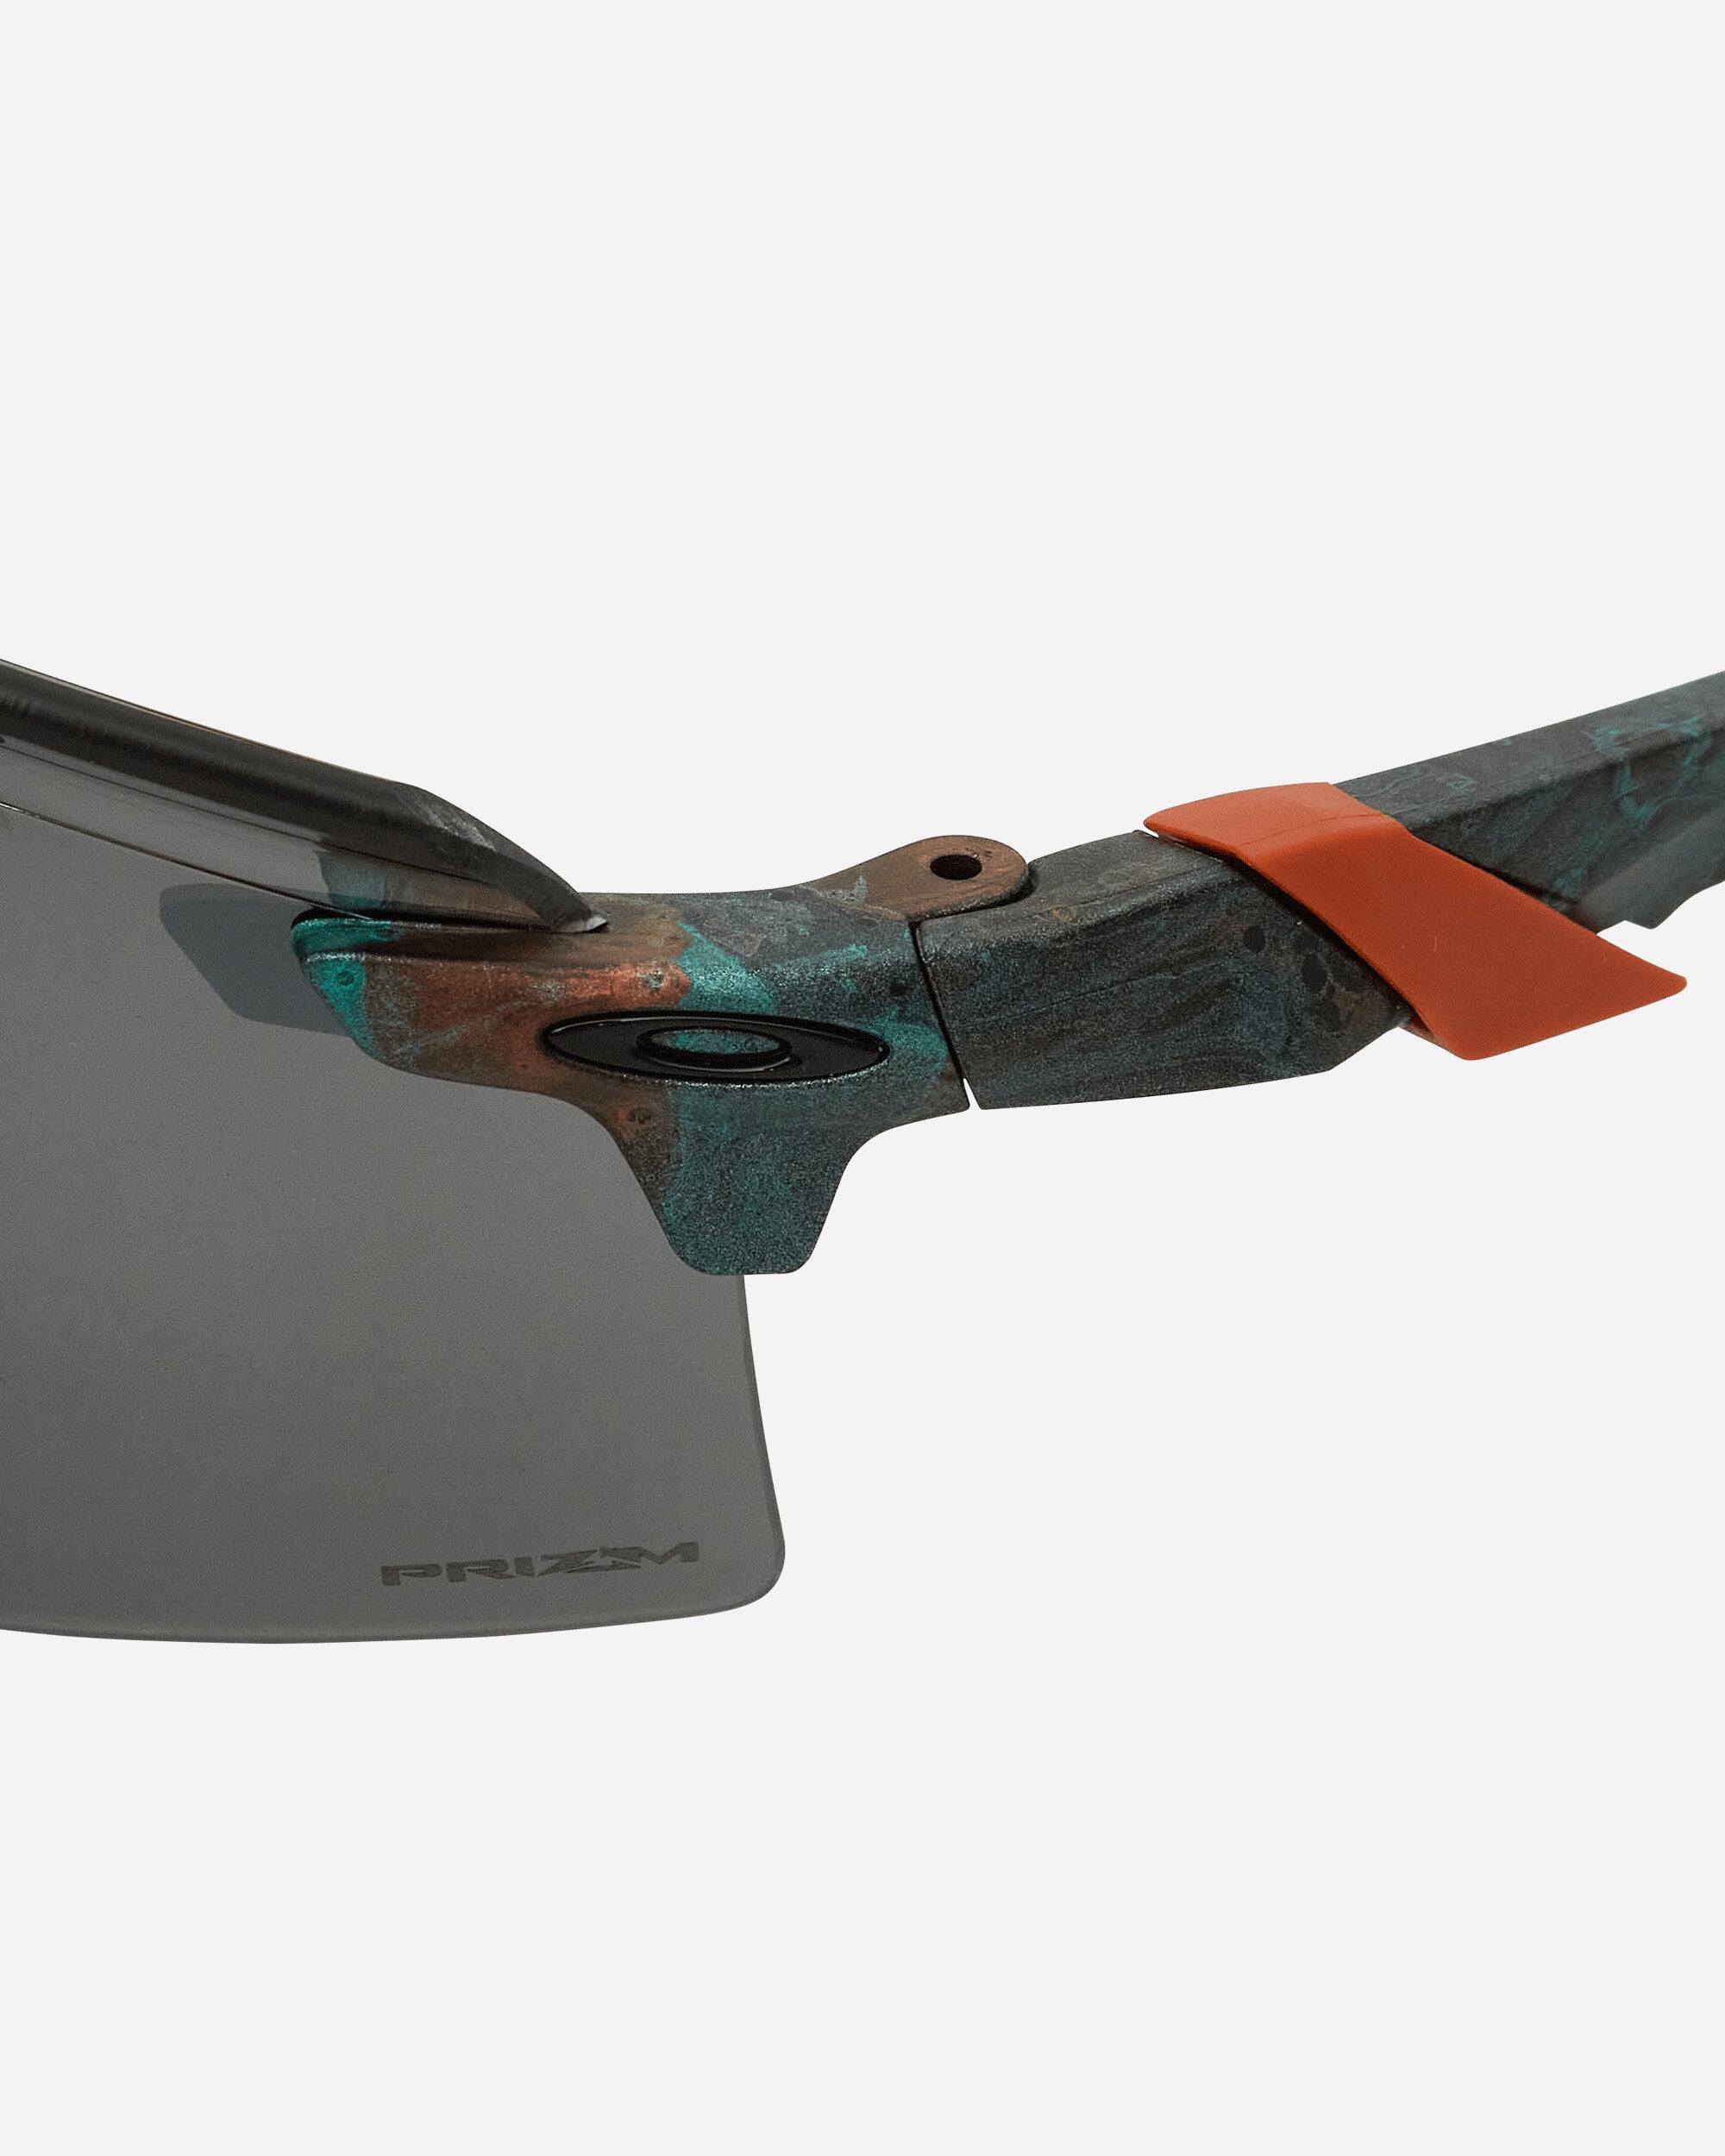 Oakley Encoder Strike Vented Matte Coppe Eyewear Sunglasses OO9235 15